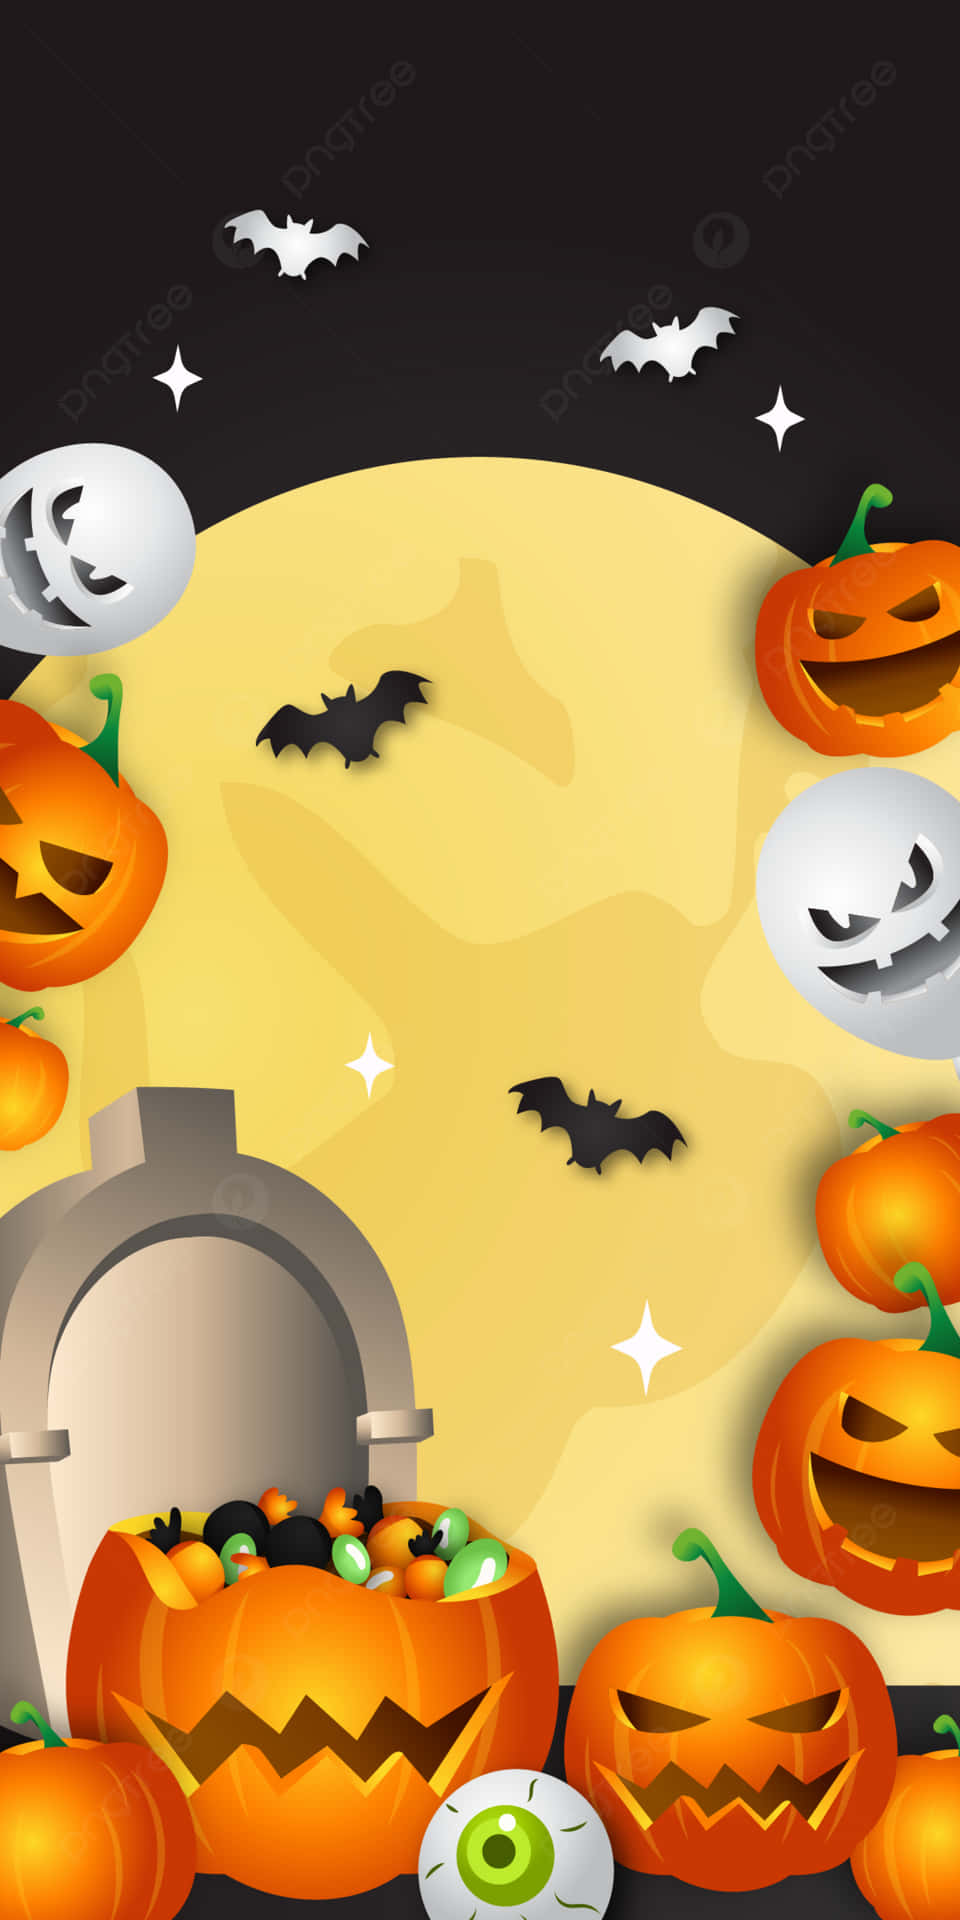 Halloweenpumpor Och Fladdermöss Framför Månen På Dator- Eller Mobilskärmsbakgrund. Wallpaper